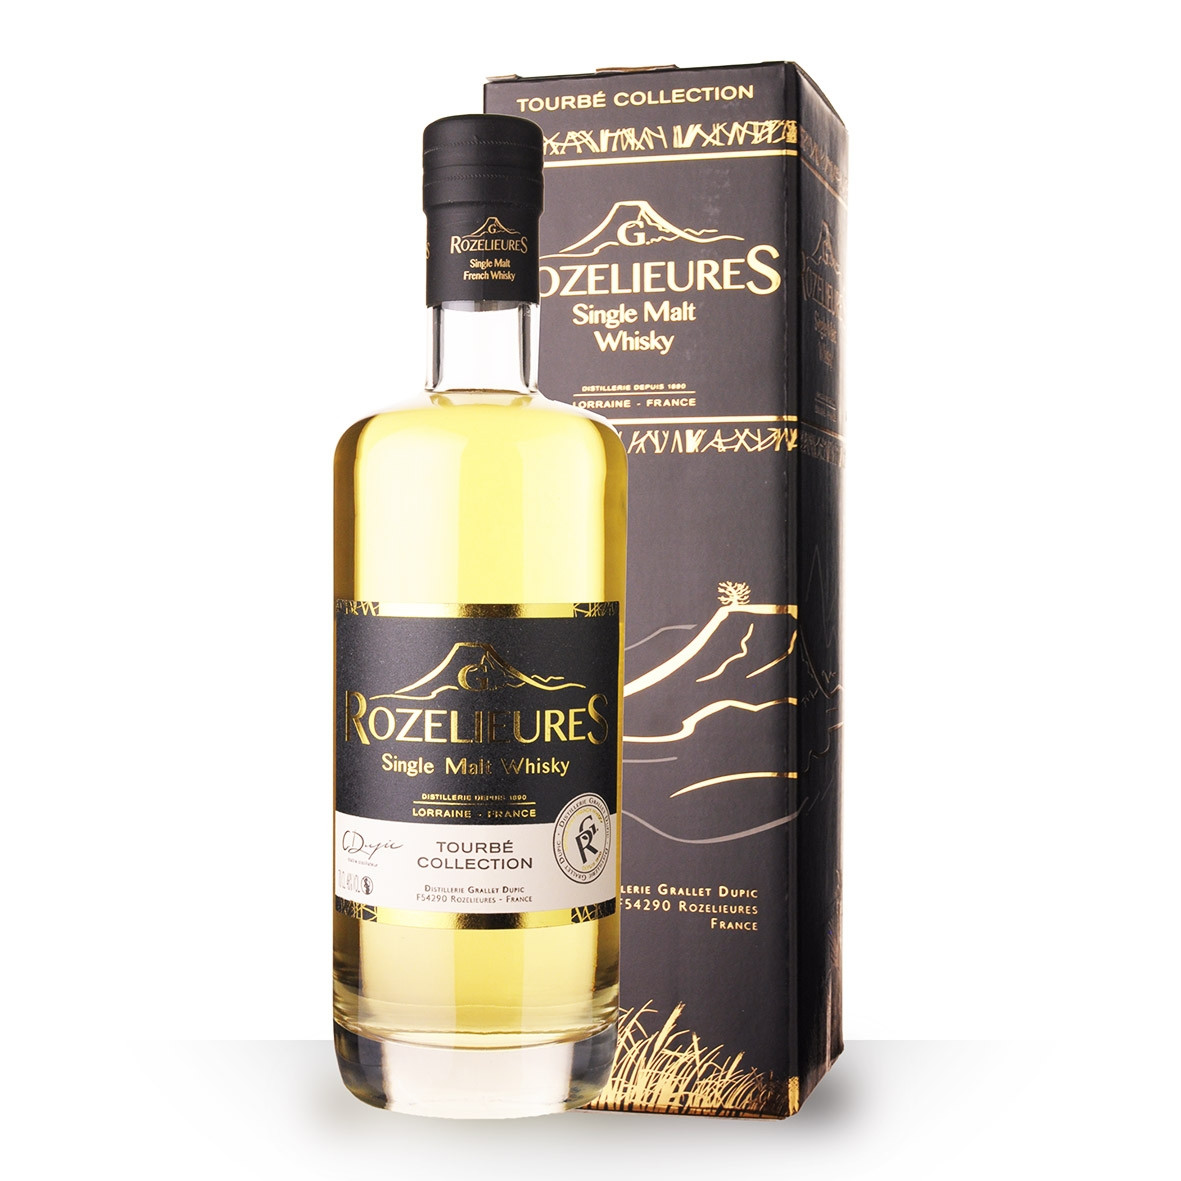 Achat de Whisky Rozelieures Tourbé Collection 70cl vendu en Etui sur notre  site - Odyssee-vins